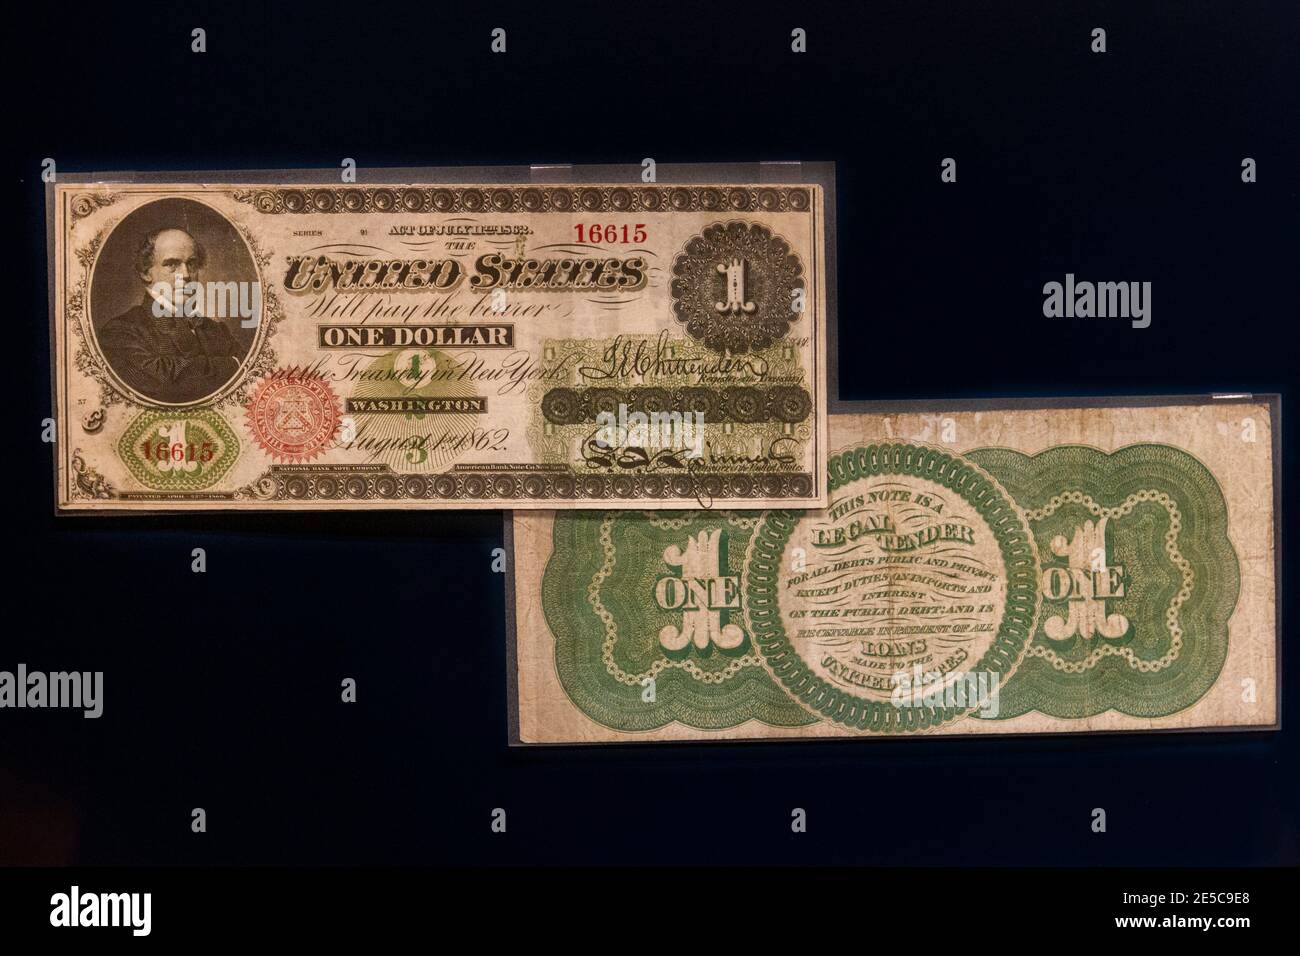 Una banconota da un dollaro del Tesoro degli Stati Uniti (1862), la prima 'greenback' con un'impronta verde sul retro, The Money Gallery, Ashmolean Museum, Oxford, UK. Foto Stock